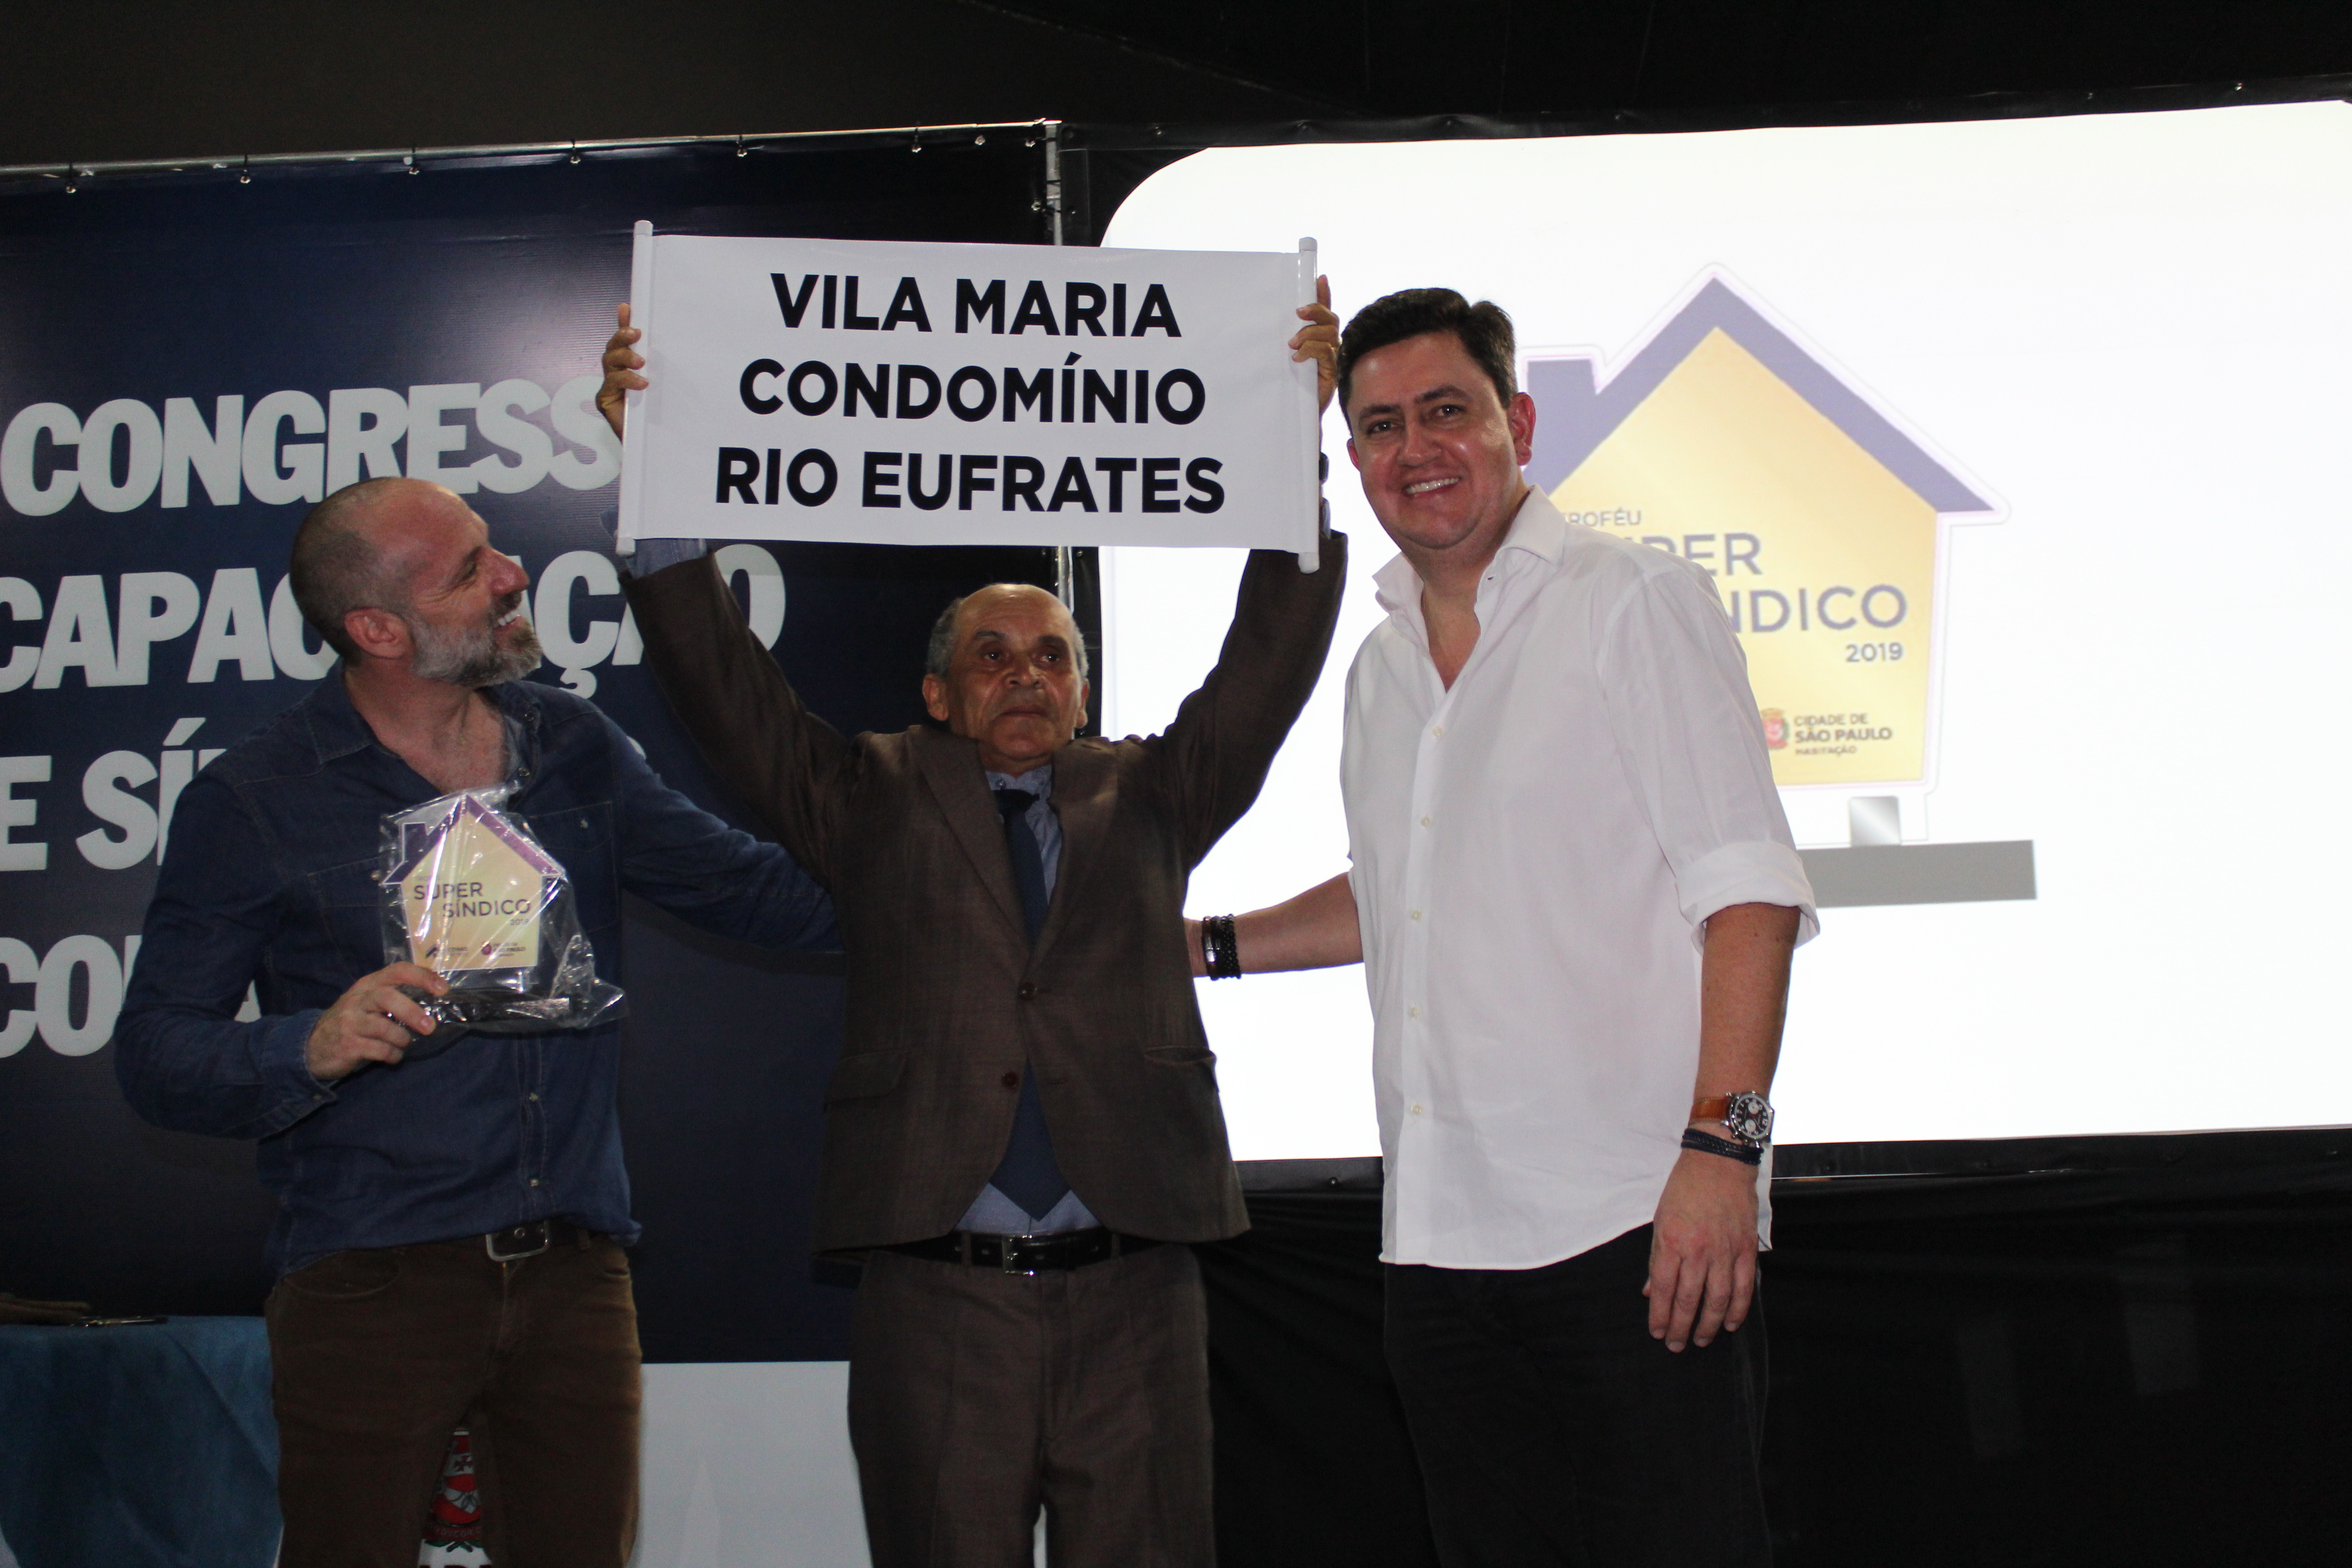 Na foto, da esquerda pra direta está Marcio Rachkorsky, no meio com o troféu o sindico Lourival Figueiredo dos Santos e ao lado dele está o presidente da Cohab Alex Peixe. 